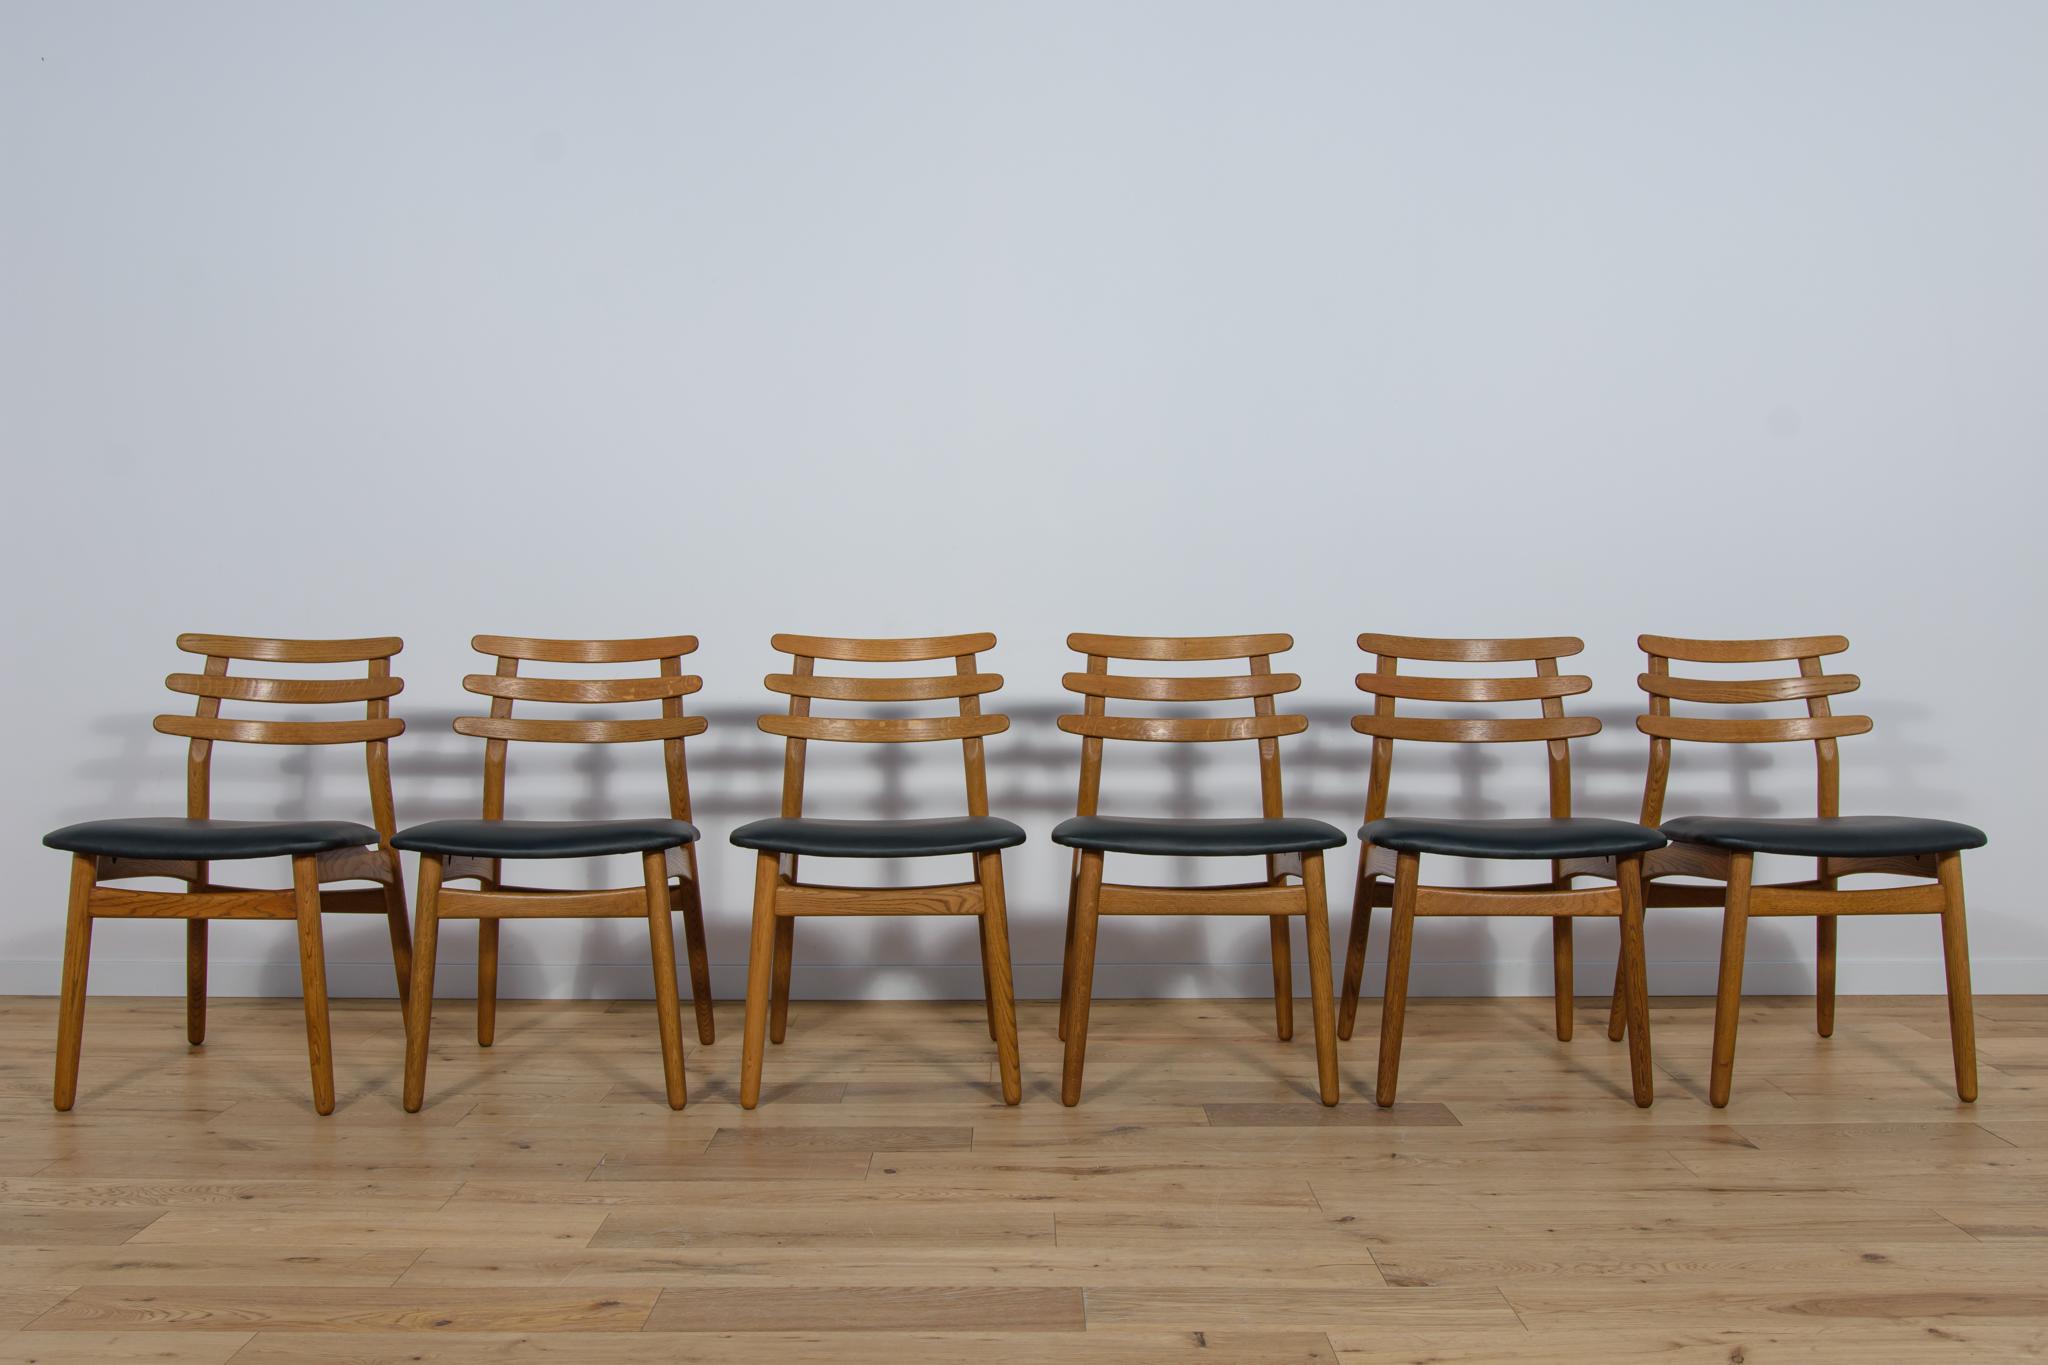 Un ensemble de quatre chaises conçues par Poul Volther pour l'usine danoise FDB Mobler dans les années 1960. Les chaises ont fait l'objet d'une rénovation professionnelle de la menuiserie et de la tapisserie. Les cadres de chaises en bois de chêne